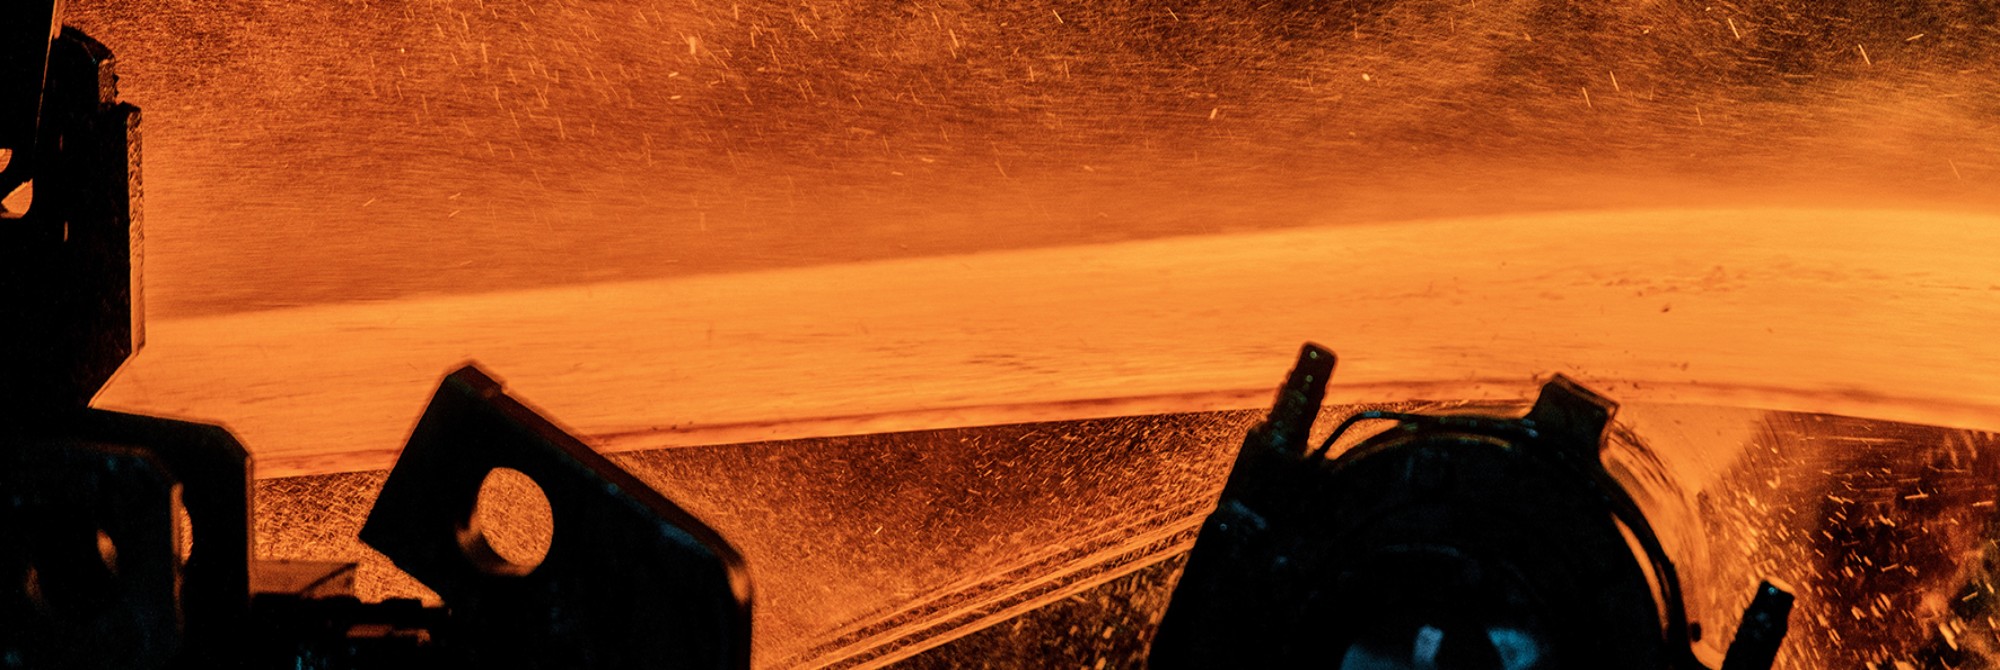 Warmband Produkte von thyssenkrupp Steel